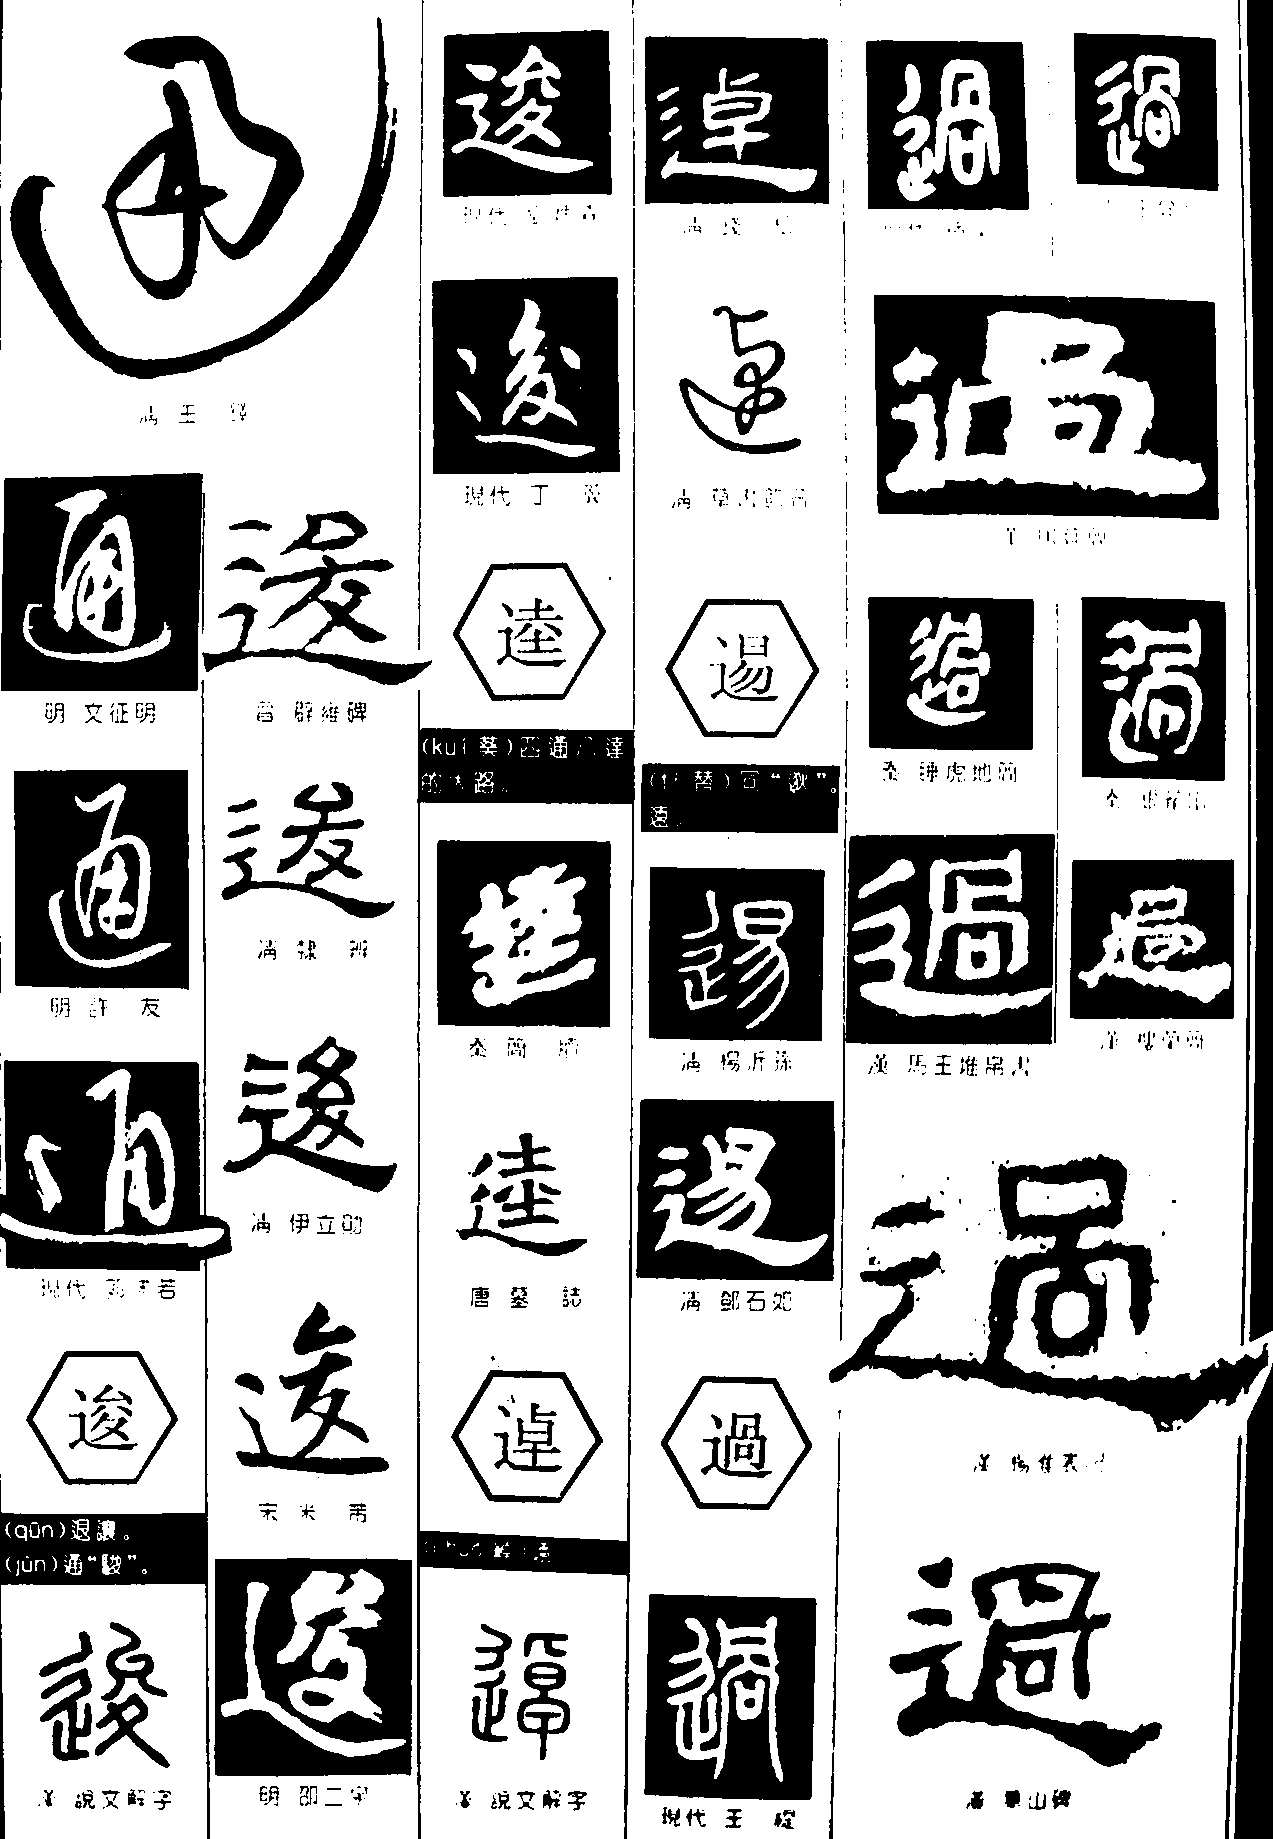 通逡逵逴逷辶 艺术字 毛笔字 书法字 繁体 标志设计 